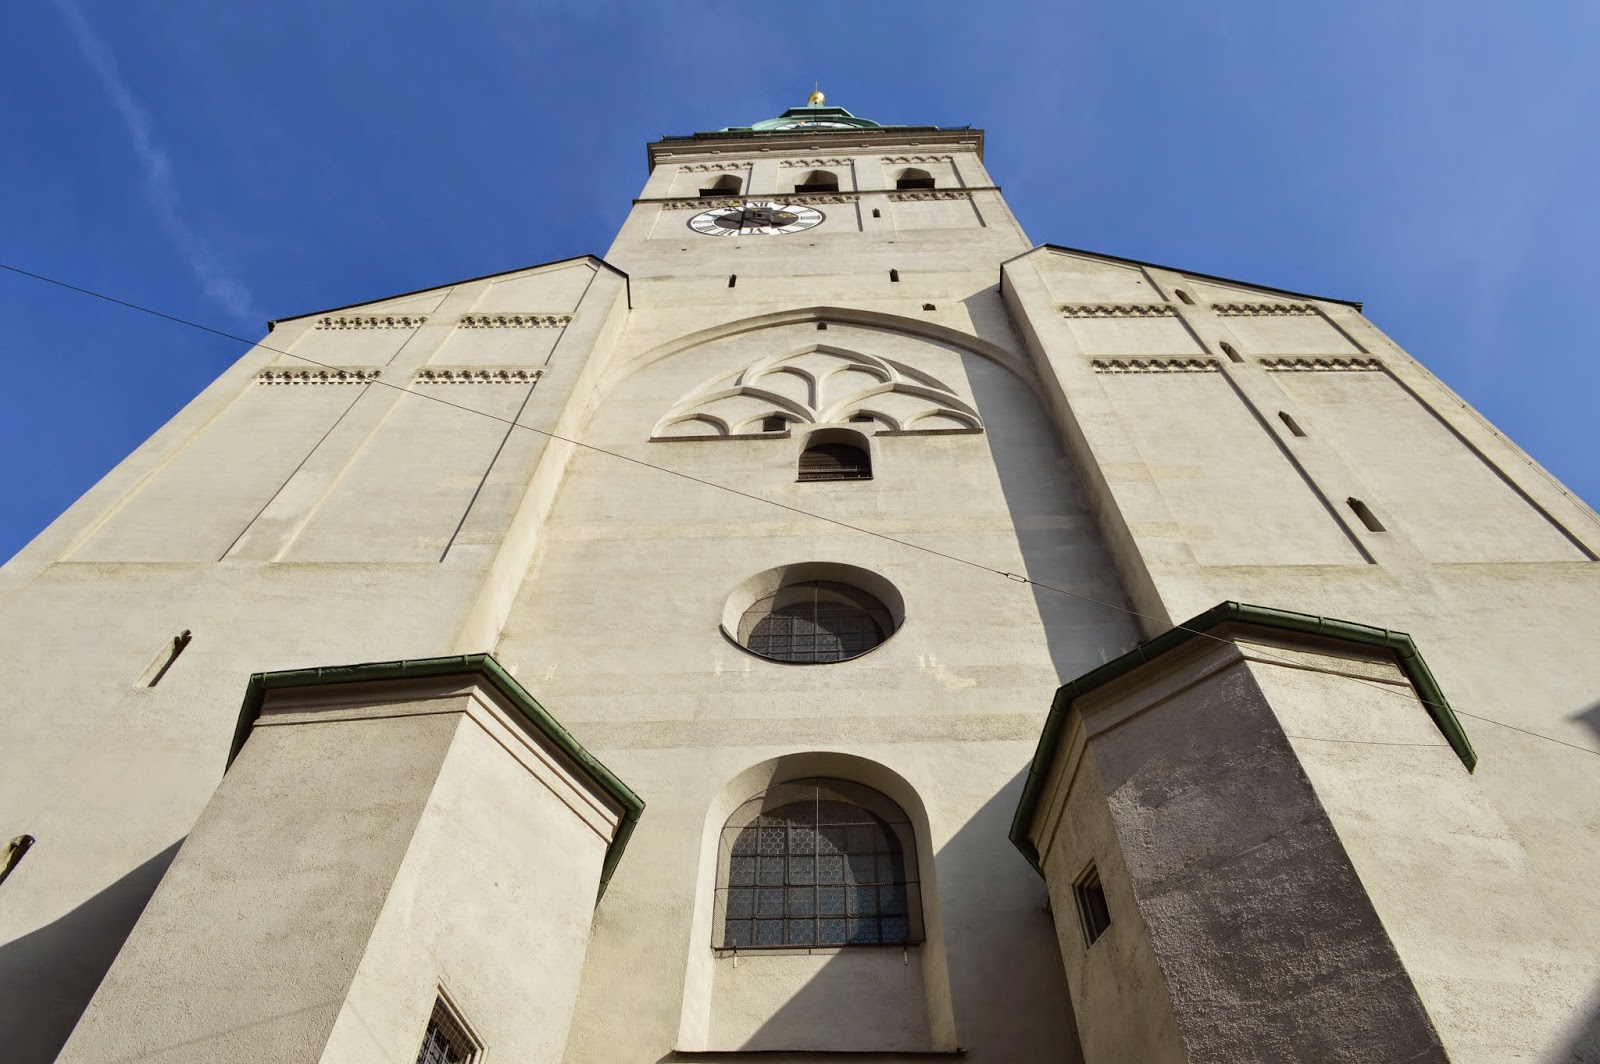 Kirche St. Peter, Munich, Germany